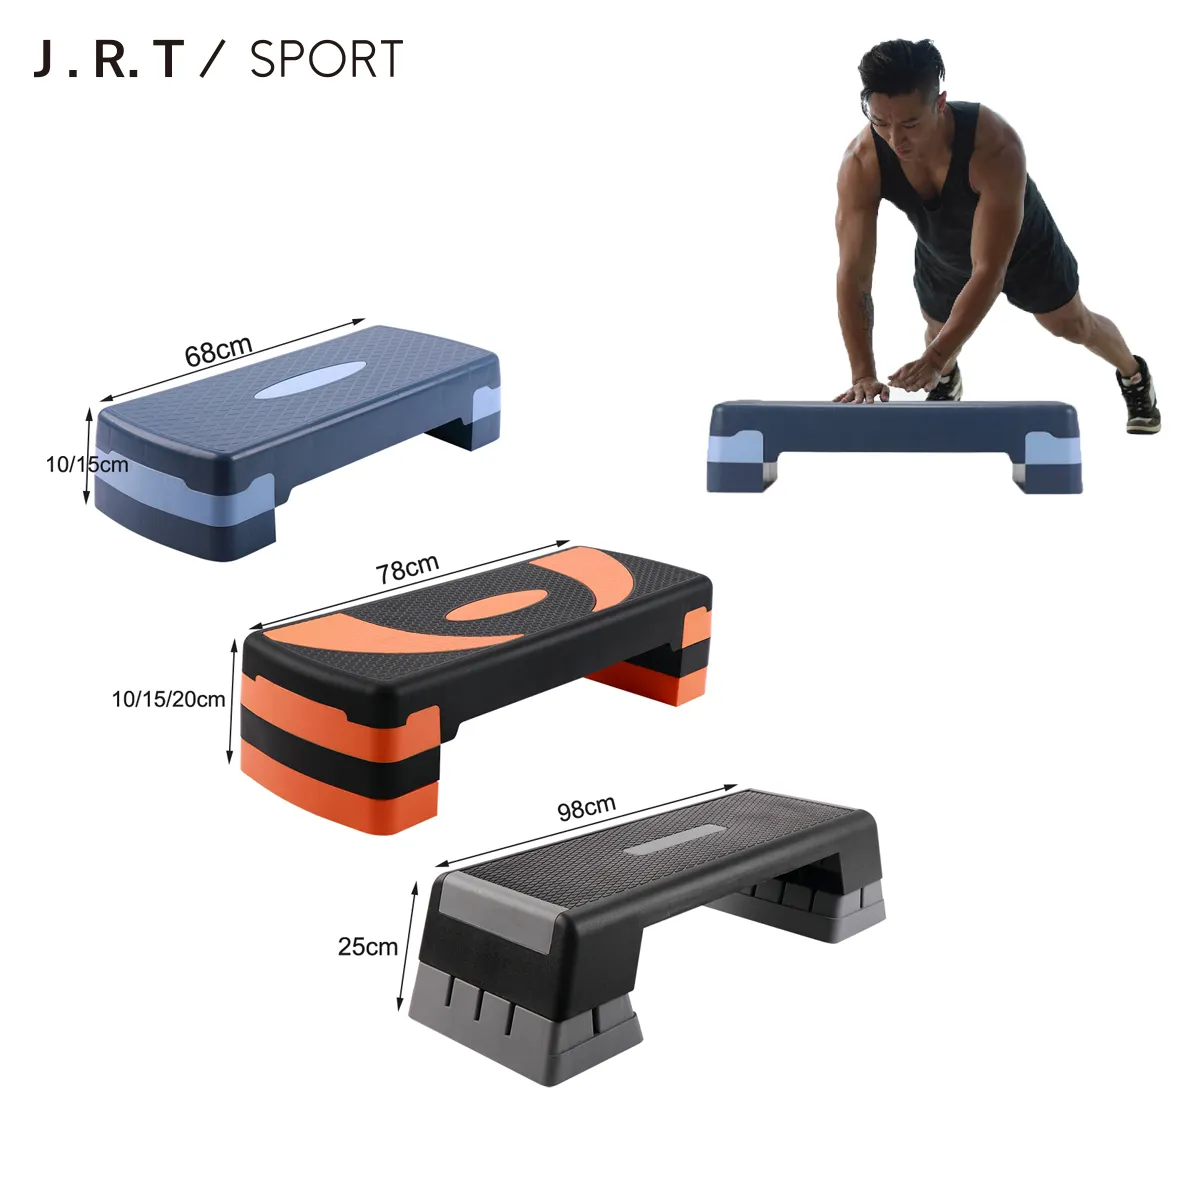 لوح رياضي قابل للضبط للتمارين الرياضية واللياقة البدنية 2022/مقعد بخطوات هوائية/ممارسة التمارين الهوائية المنزلية